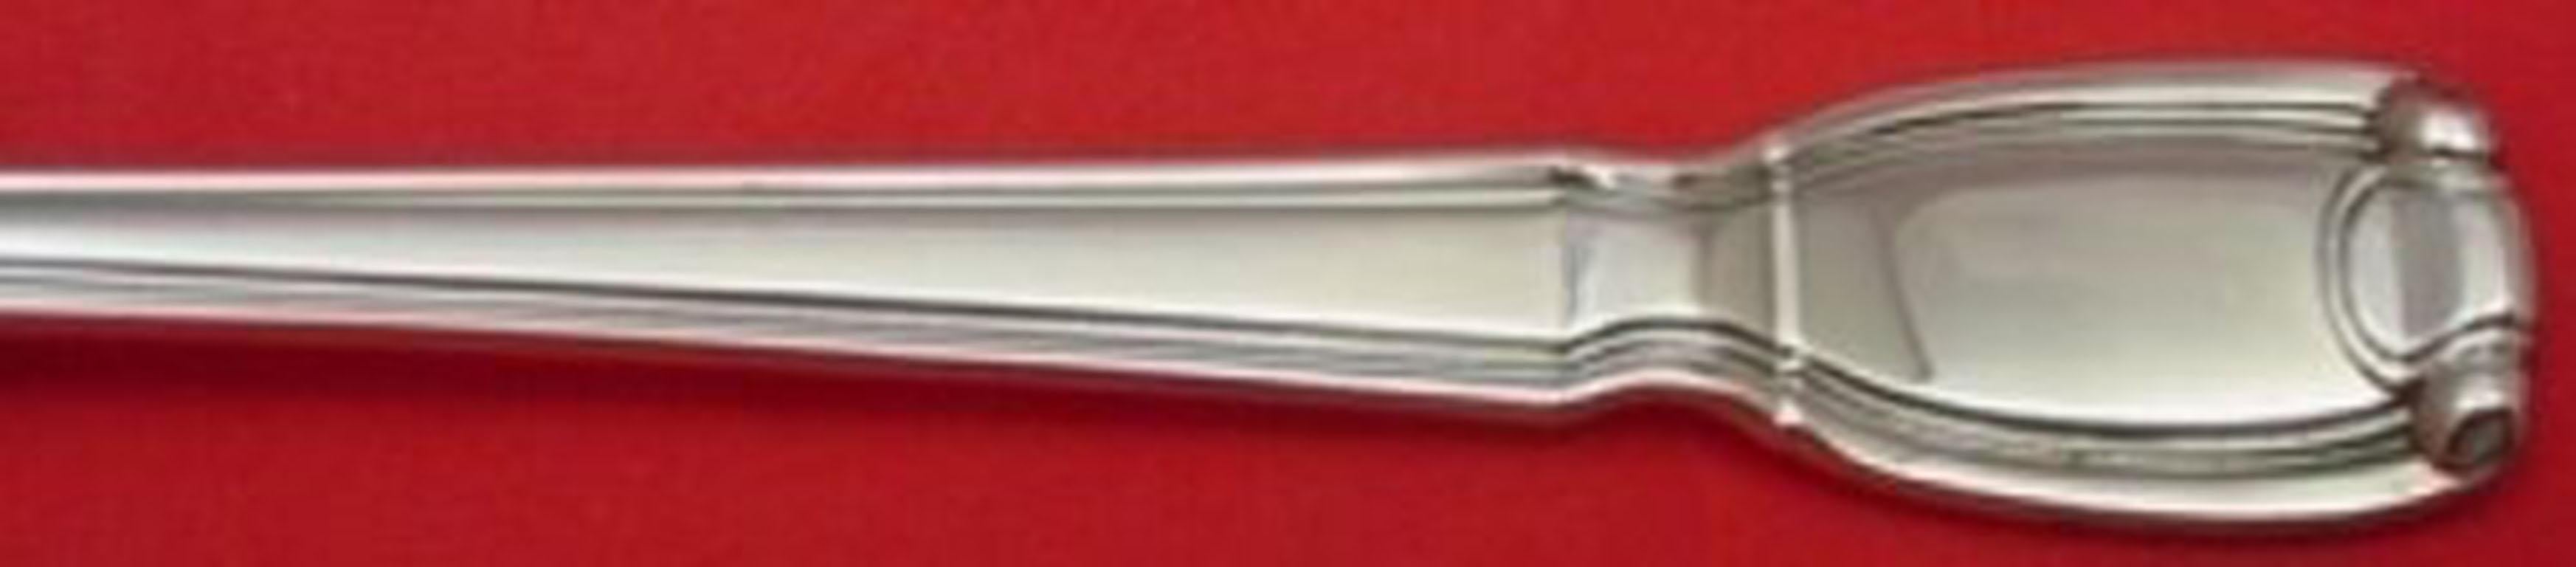 Sterling silver demitasse spoon, 4 3/8